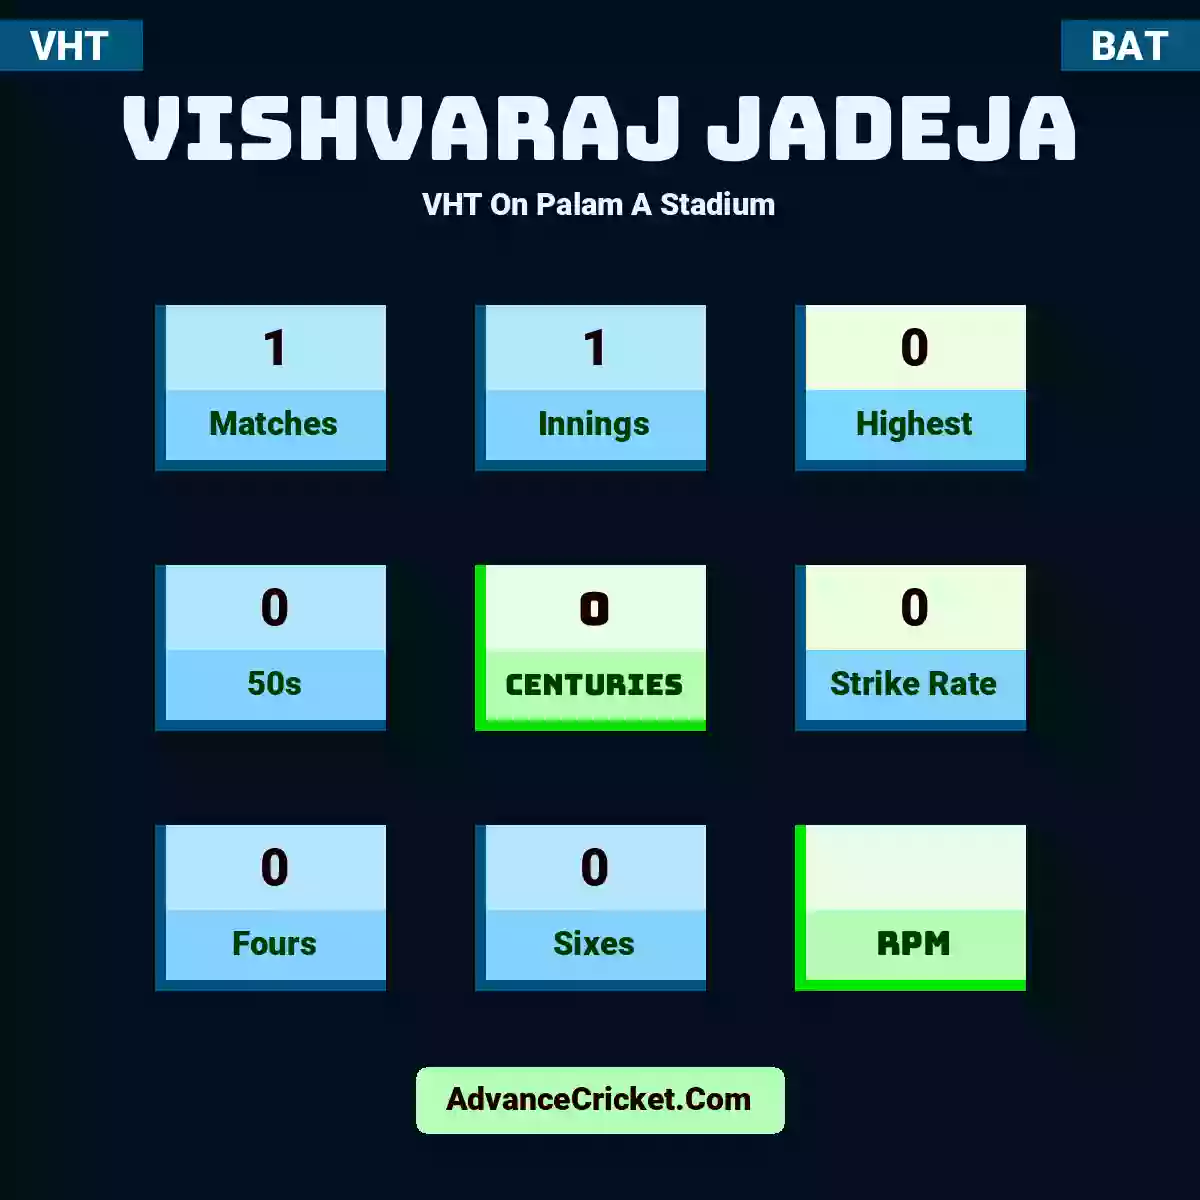 Vishvaraj Jadeja VHT  On Palam A Stadium, Vishvaraj Jadeja played 1 matches, scored 0 runs as highest, 0 half-centuries, and 0 centuries, with a strike rate of 0. V.Jadeja hit 0 fours and 0 sixes.